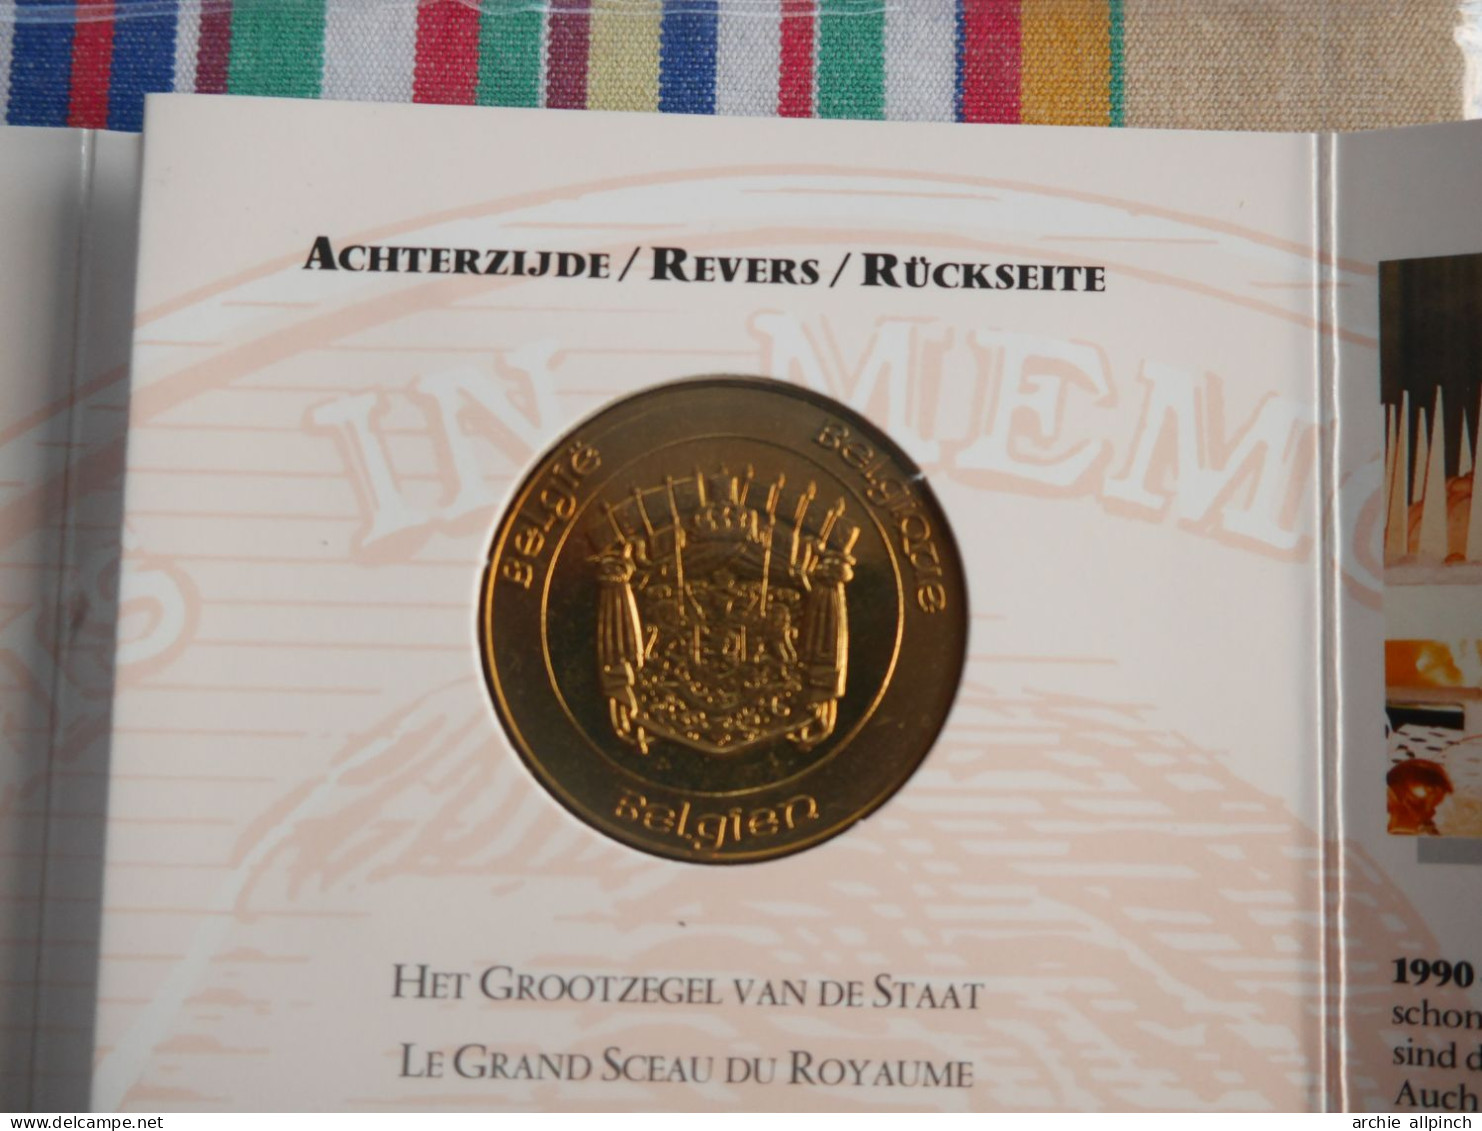 Médaille Commémorative En Bronze - Baudouin , 1930 - 1993 - Adel